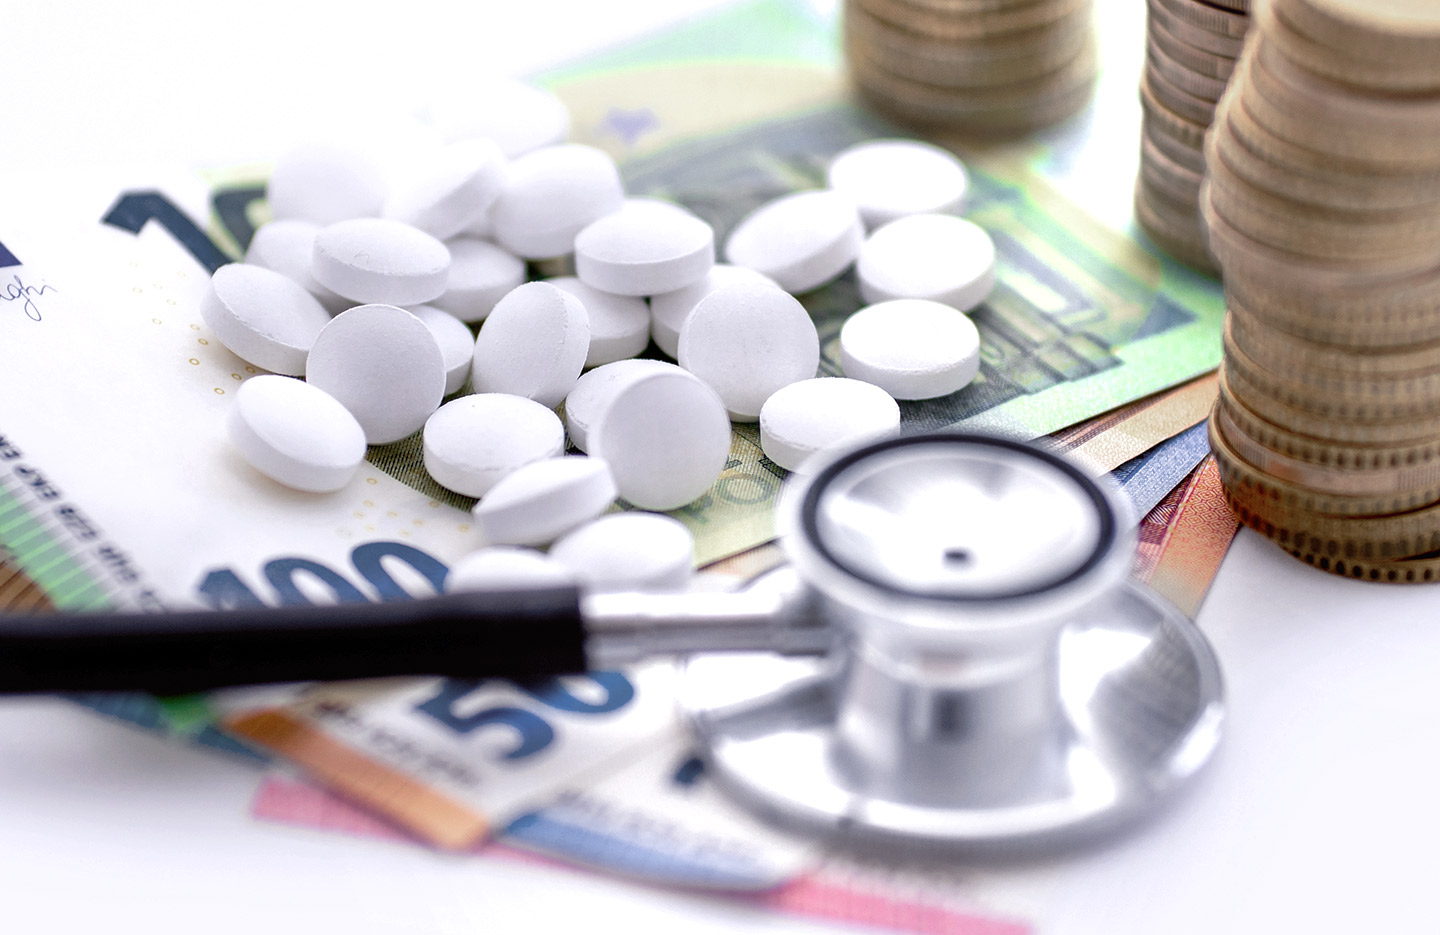 Foto: Medikamente und ein Stethoskop liegen auf Geldscheinen neben gestapelten Münzen.